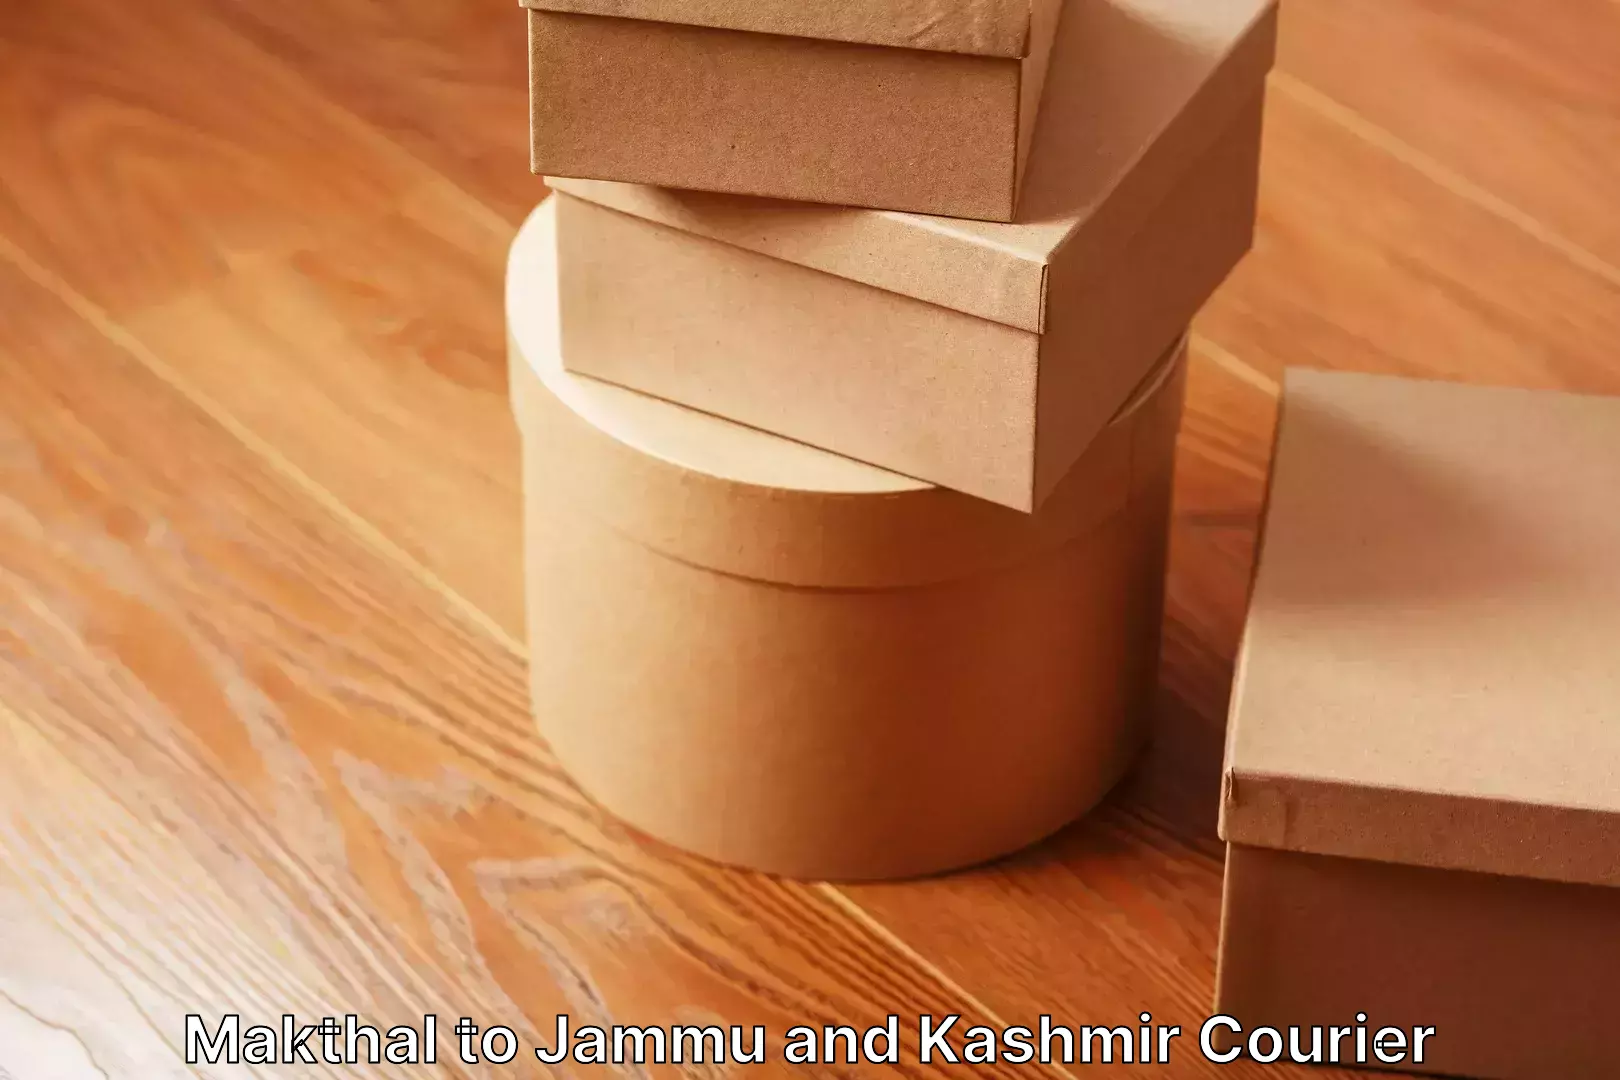 Home shifting experts Makthal to Jammu and Kashmir